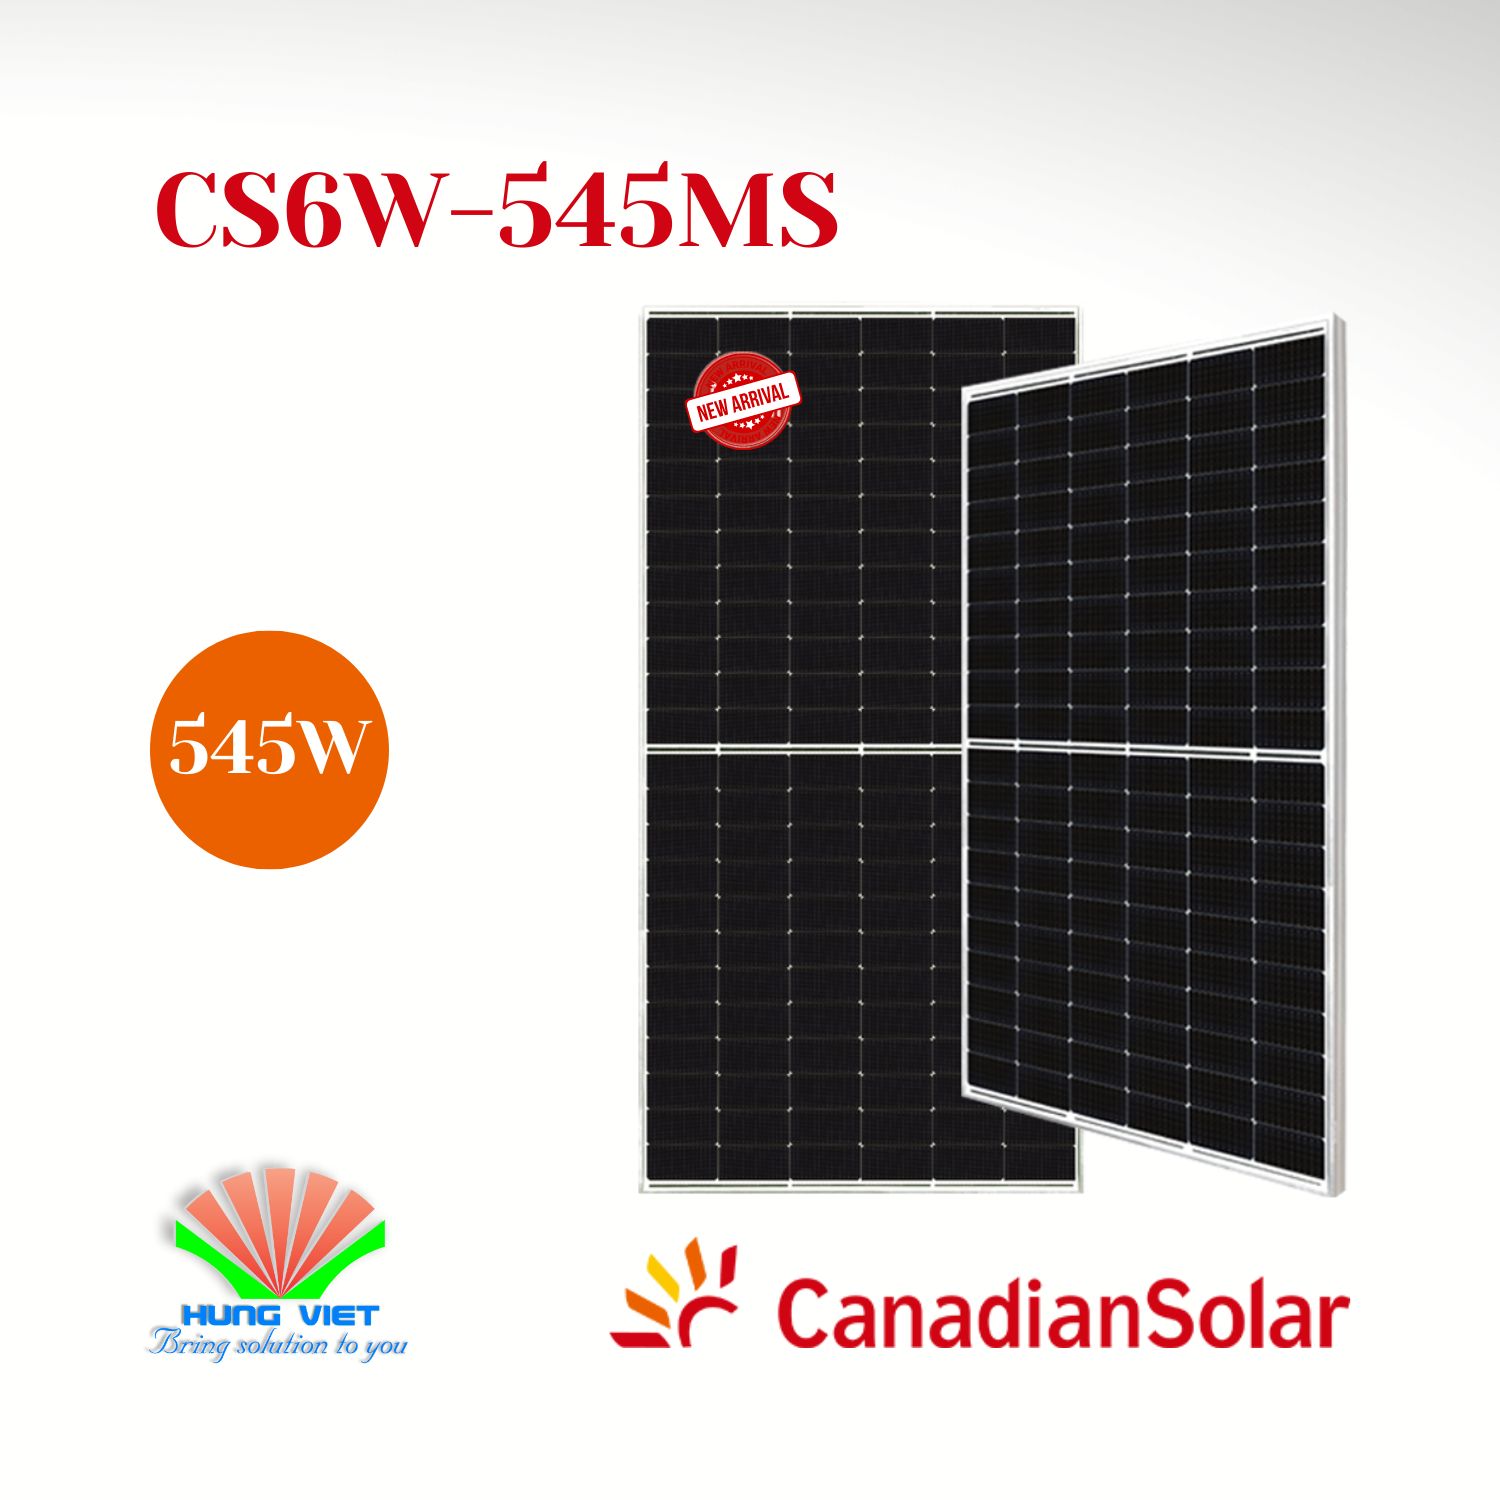 Tấm pin năng lượng mặt trời Canadian Solar 545W -  CS6W-545MS